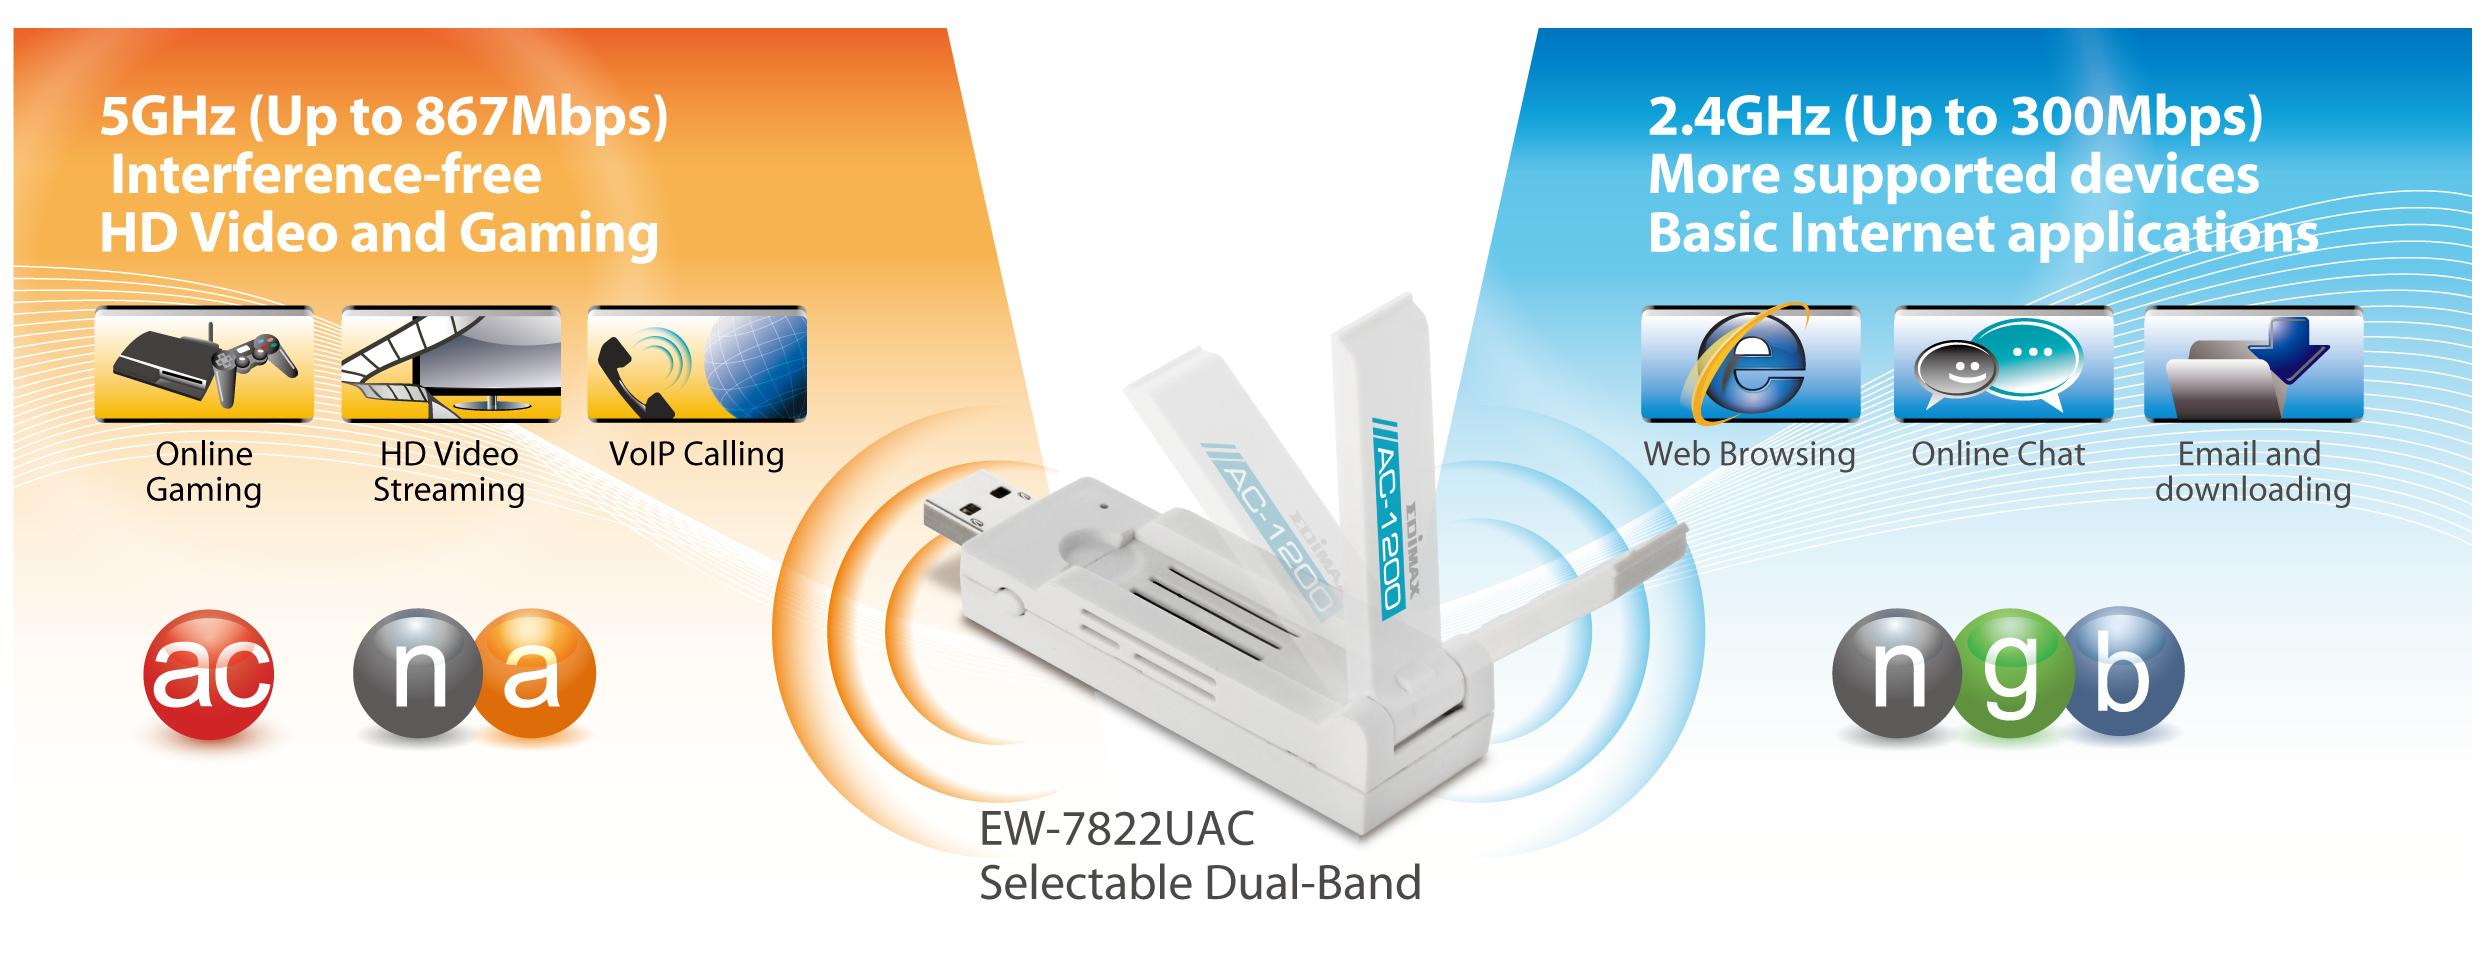 EDIMAX EW-7822UAC AC1200 Wireless Dual-Band 5GHz WiFi USB 3.0 Adapter Antenna 